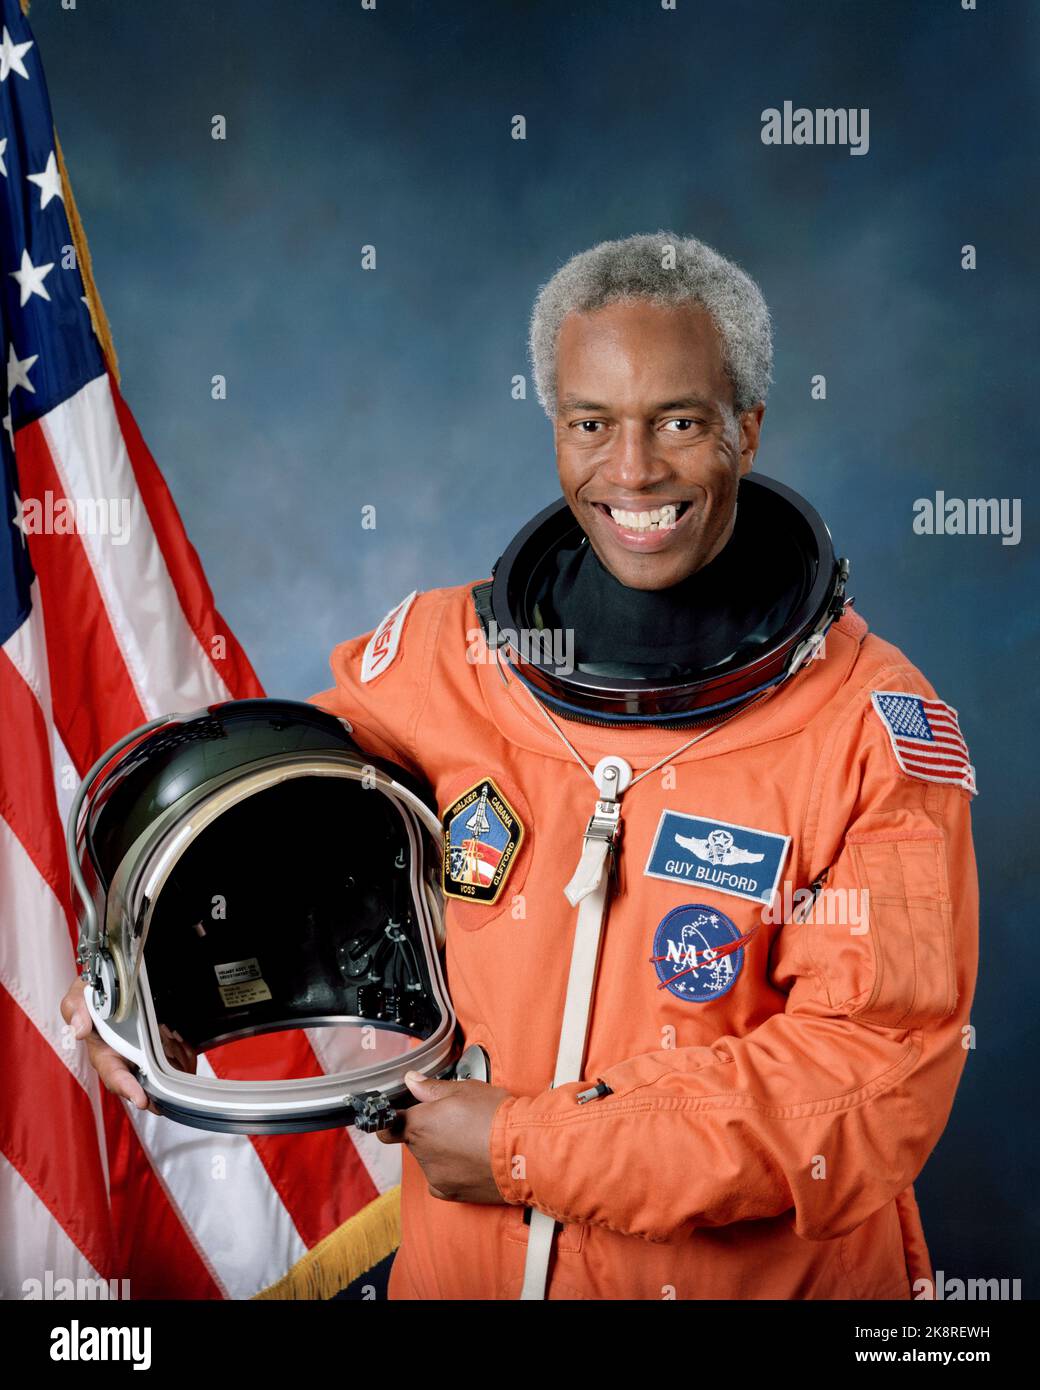 Portrait officiel de l'astronaute Guion S. Bluford. Bluford, membre de la classe 8 de l'astronaute et de la United States Air Force (USAF), pose dans son costume de lancement et d'entrée (LES) tenant un casque de lancement et d'entrée (LEH) avec le drapeau des États-Unis comme toile de fond. Banque D'Images